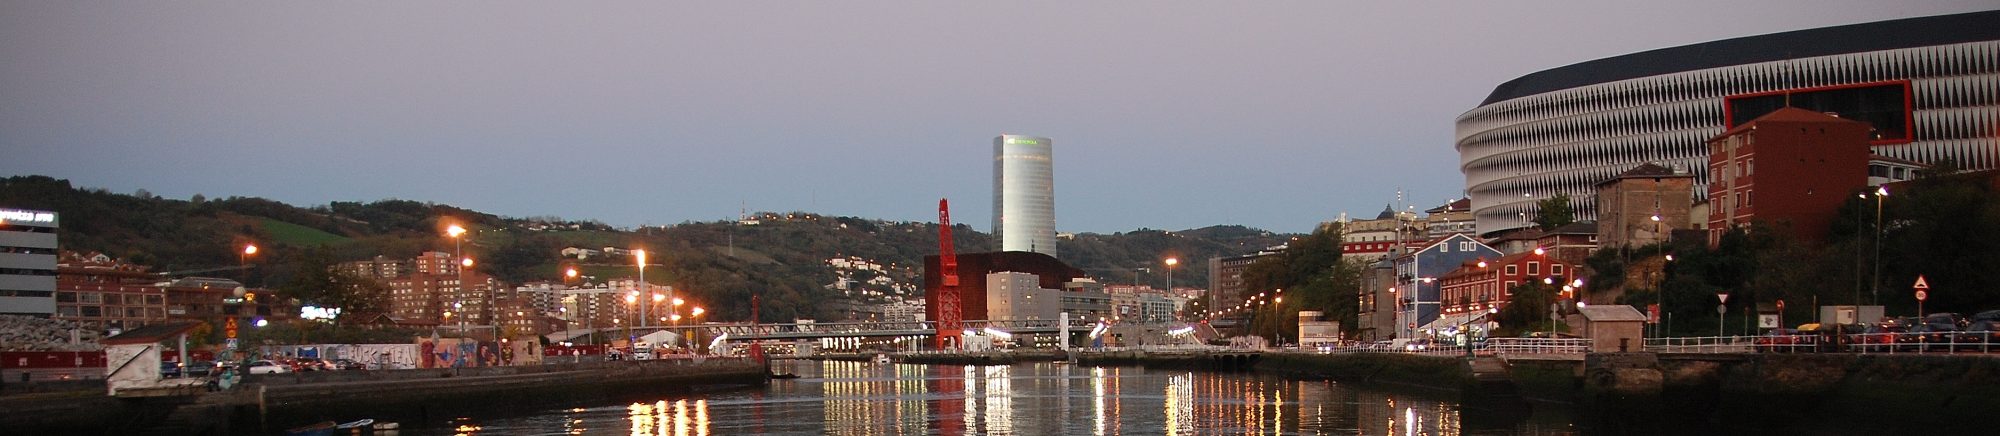 Bilbao Song 2019: un viaje a finales de marzo del año diecinueve